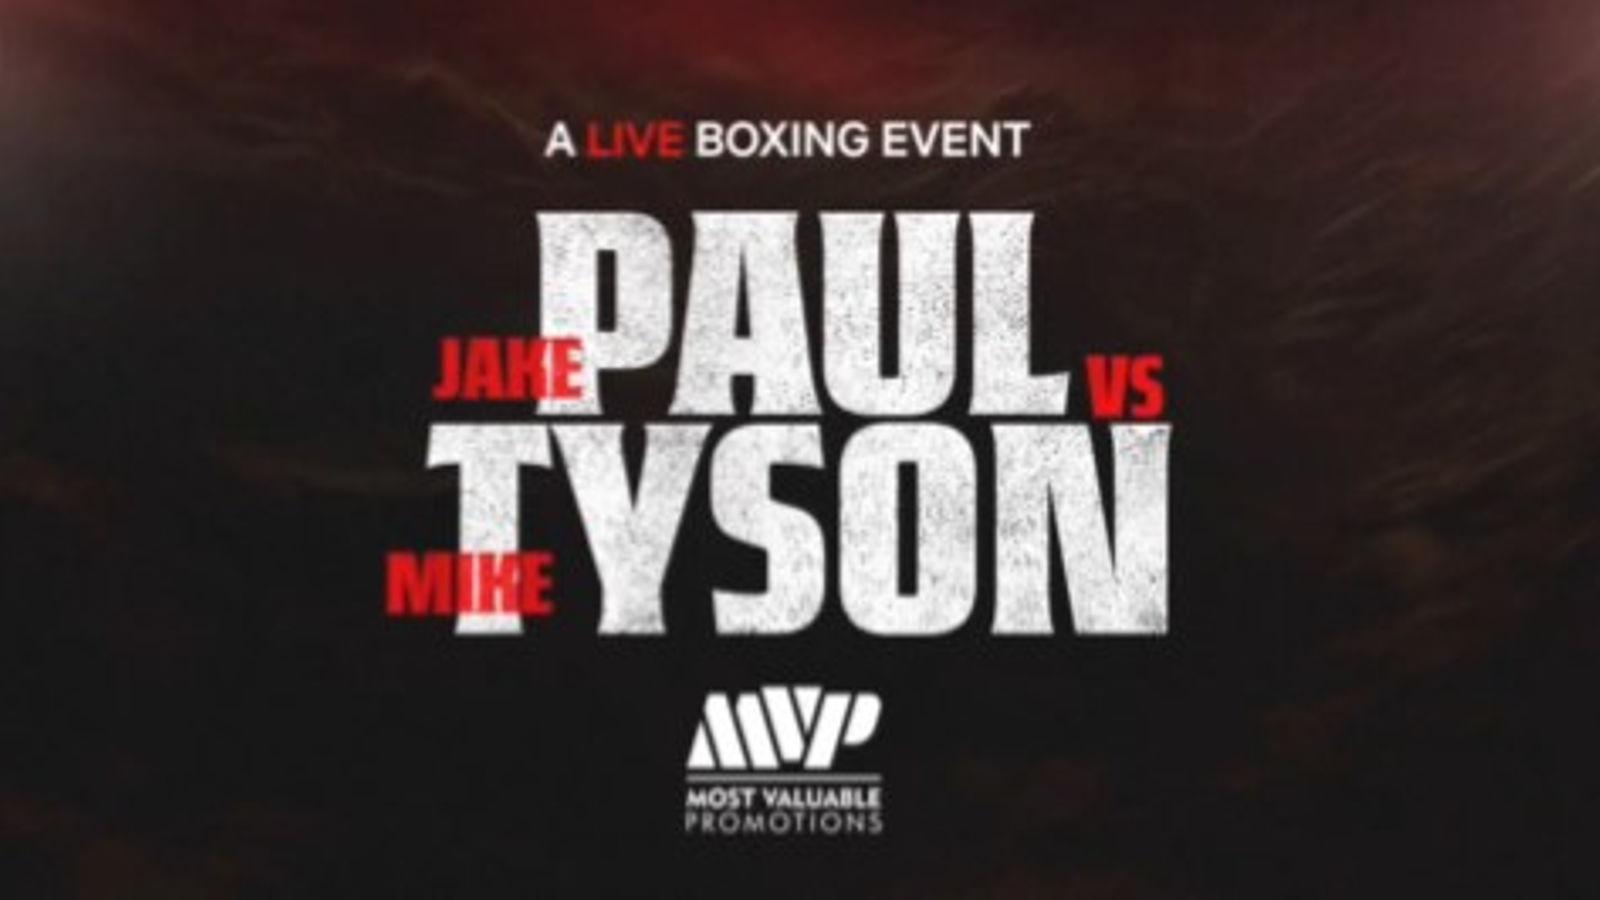 Jake Paul will fight Mike Tyson